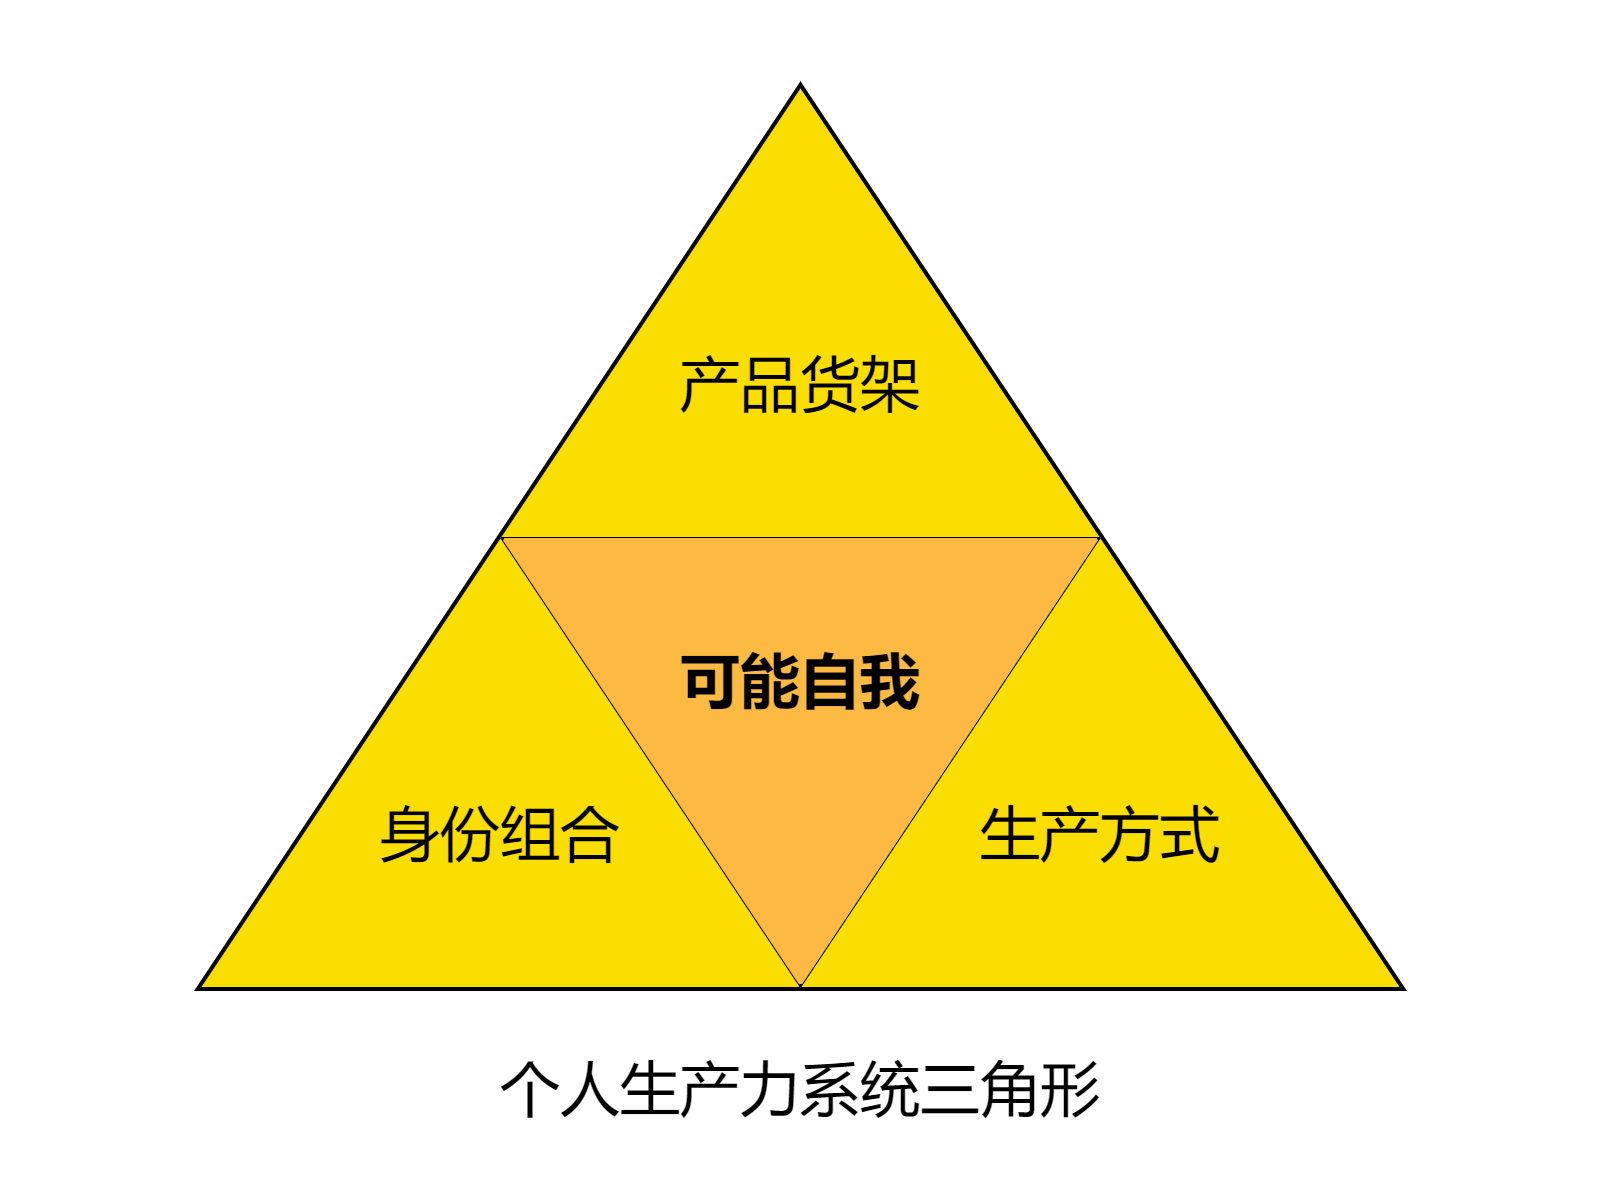 生产力系统三角形.drawio.png